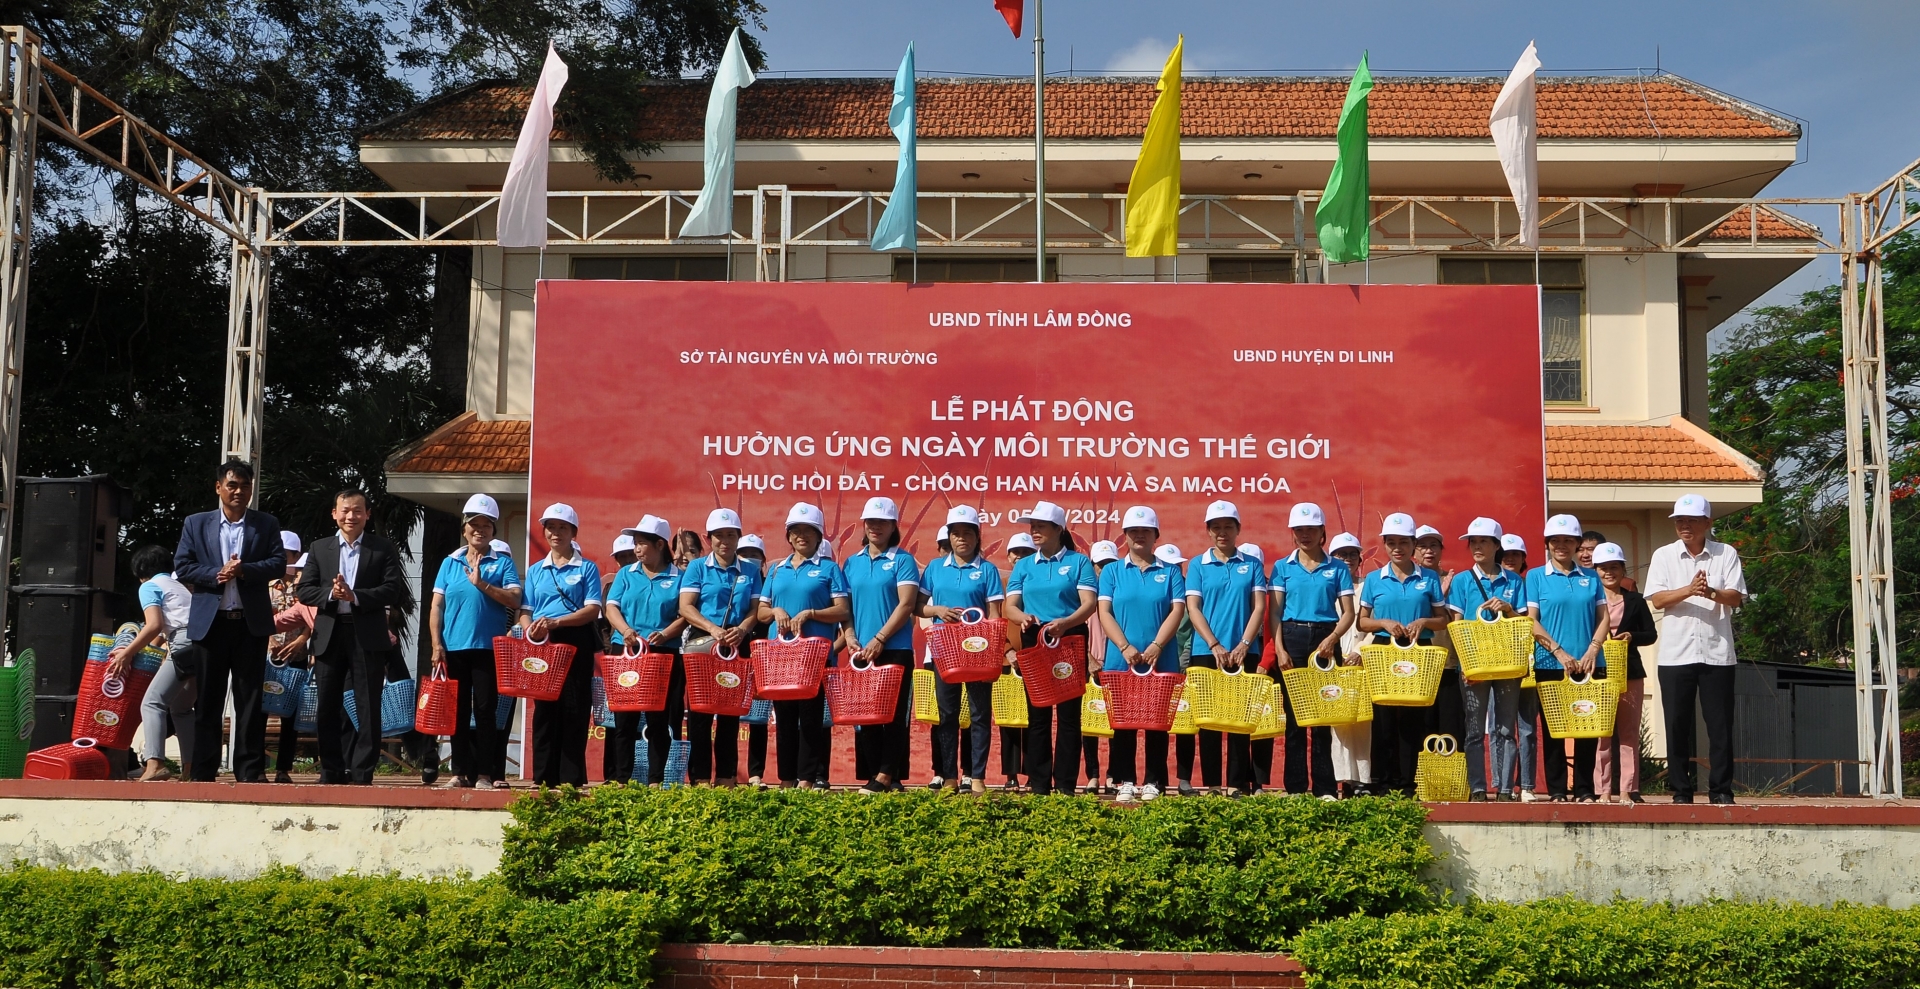 Phát động hưởng ứng Ngày Môi trường thế giới 2024 tại huyện Di Linh